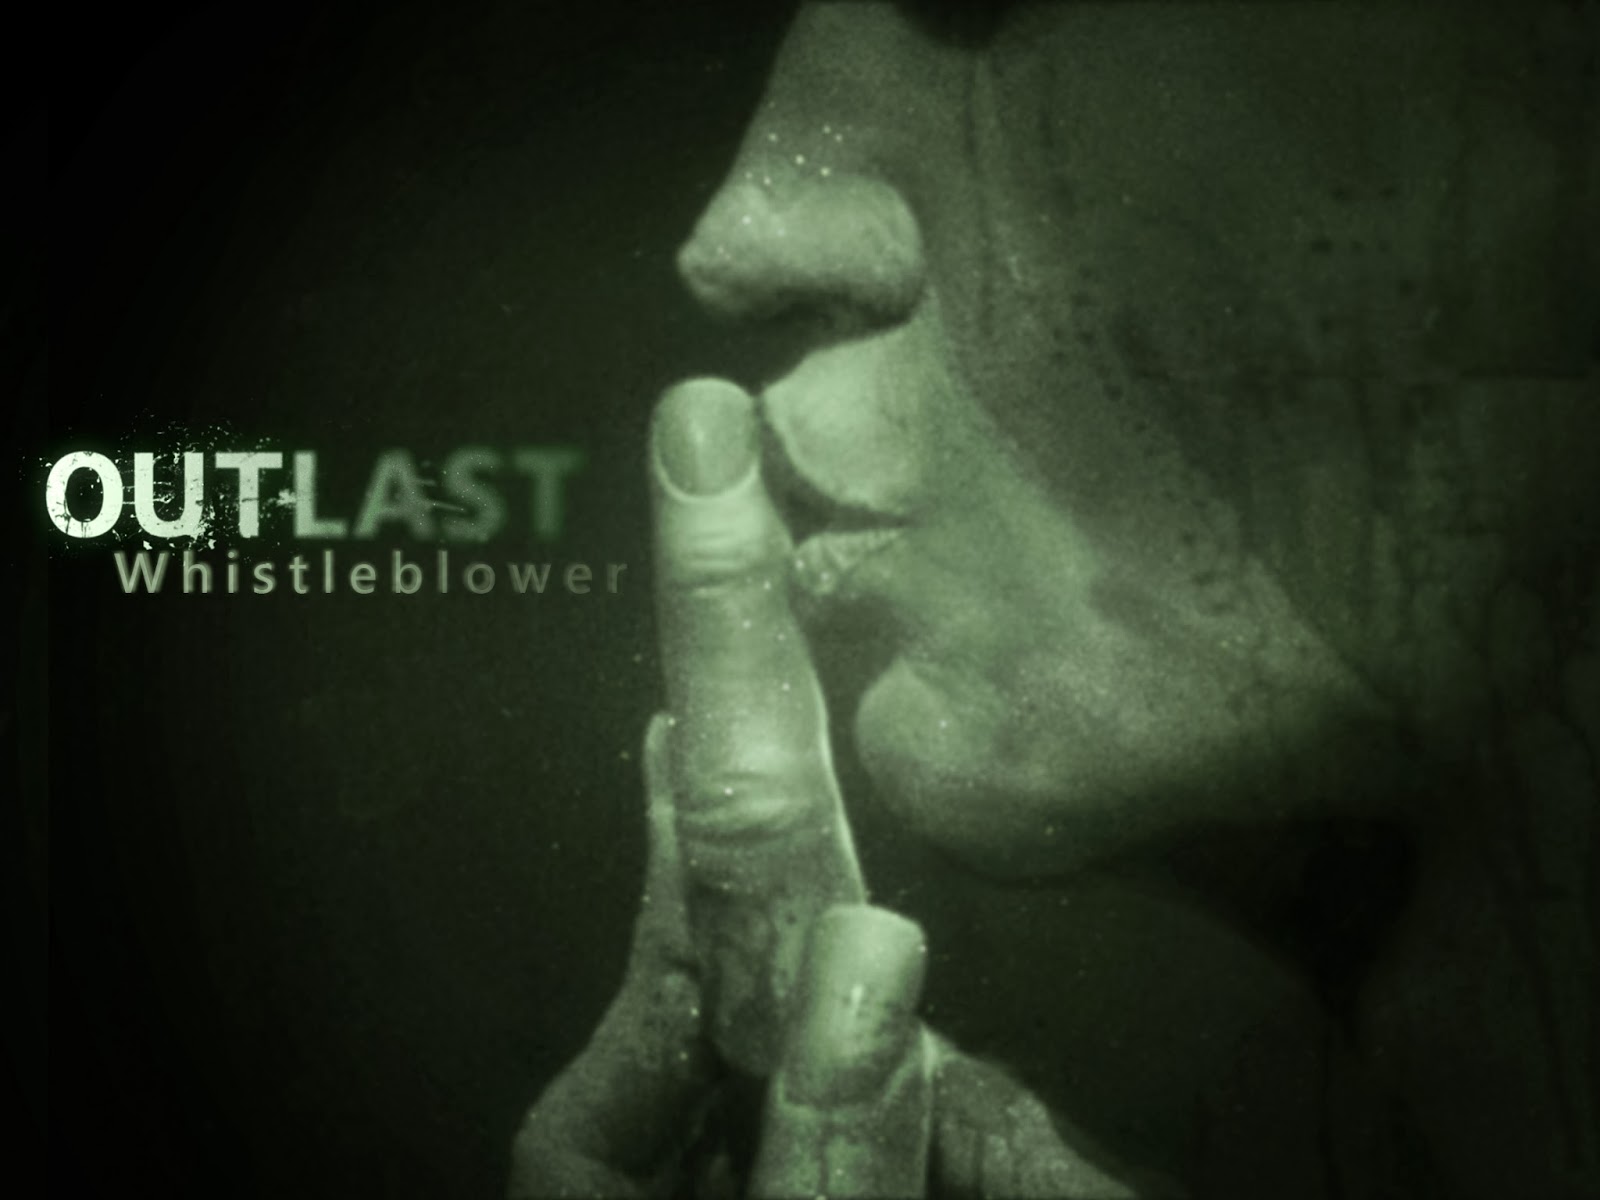 Outlast_Whistleblower